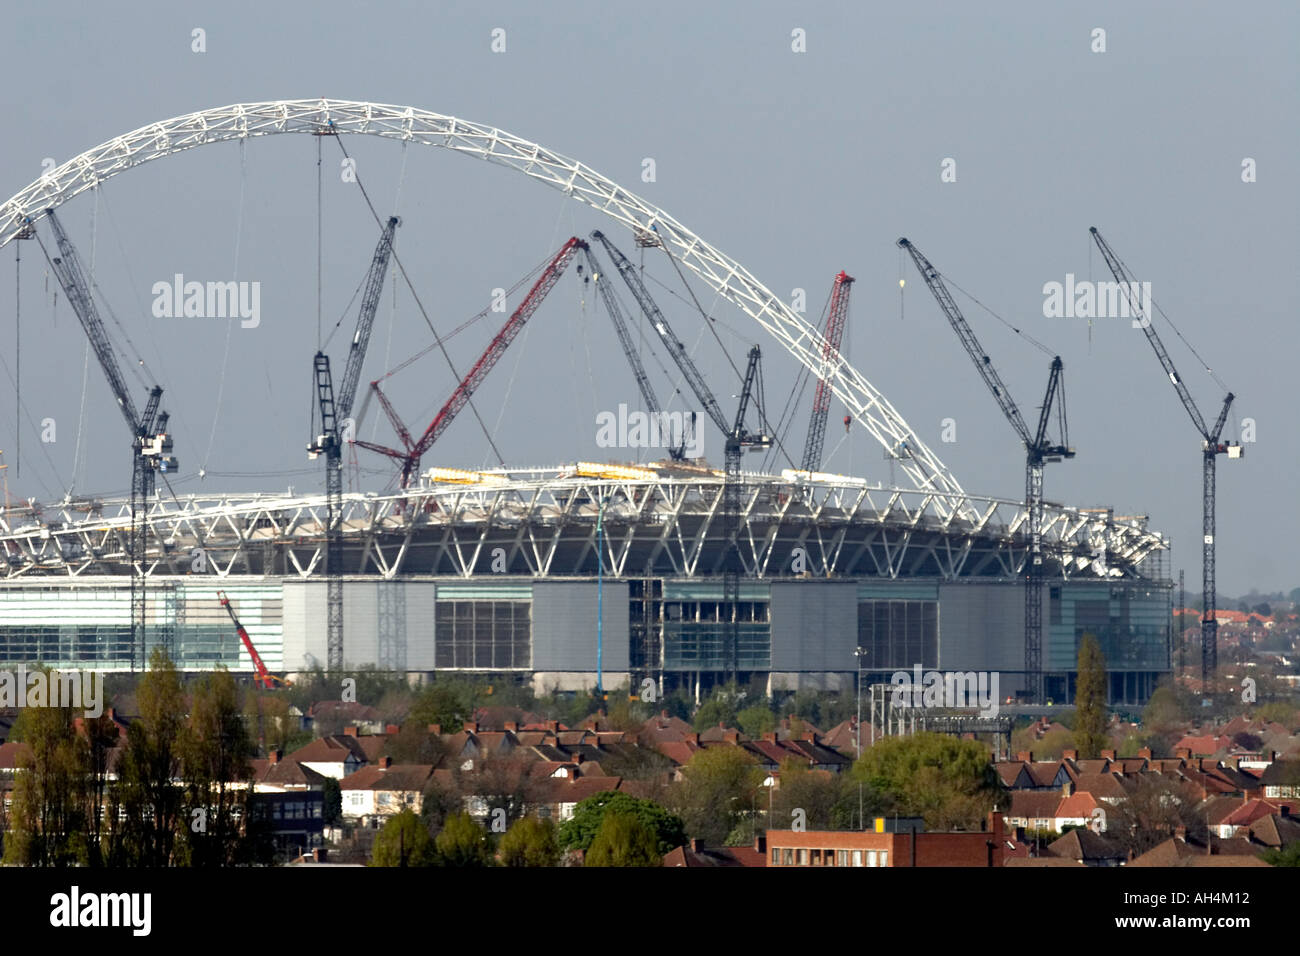 Le stade de Wembley avec nouveau arch et de grues en construction du sud London NW10 HA0 HA9 Angleterre Banque D'Images